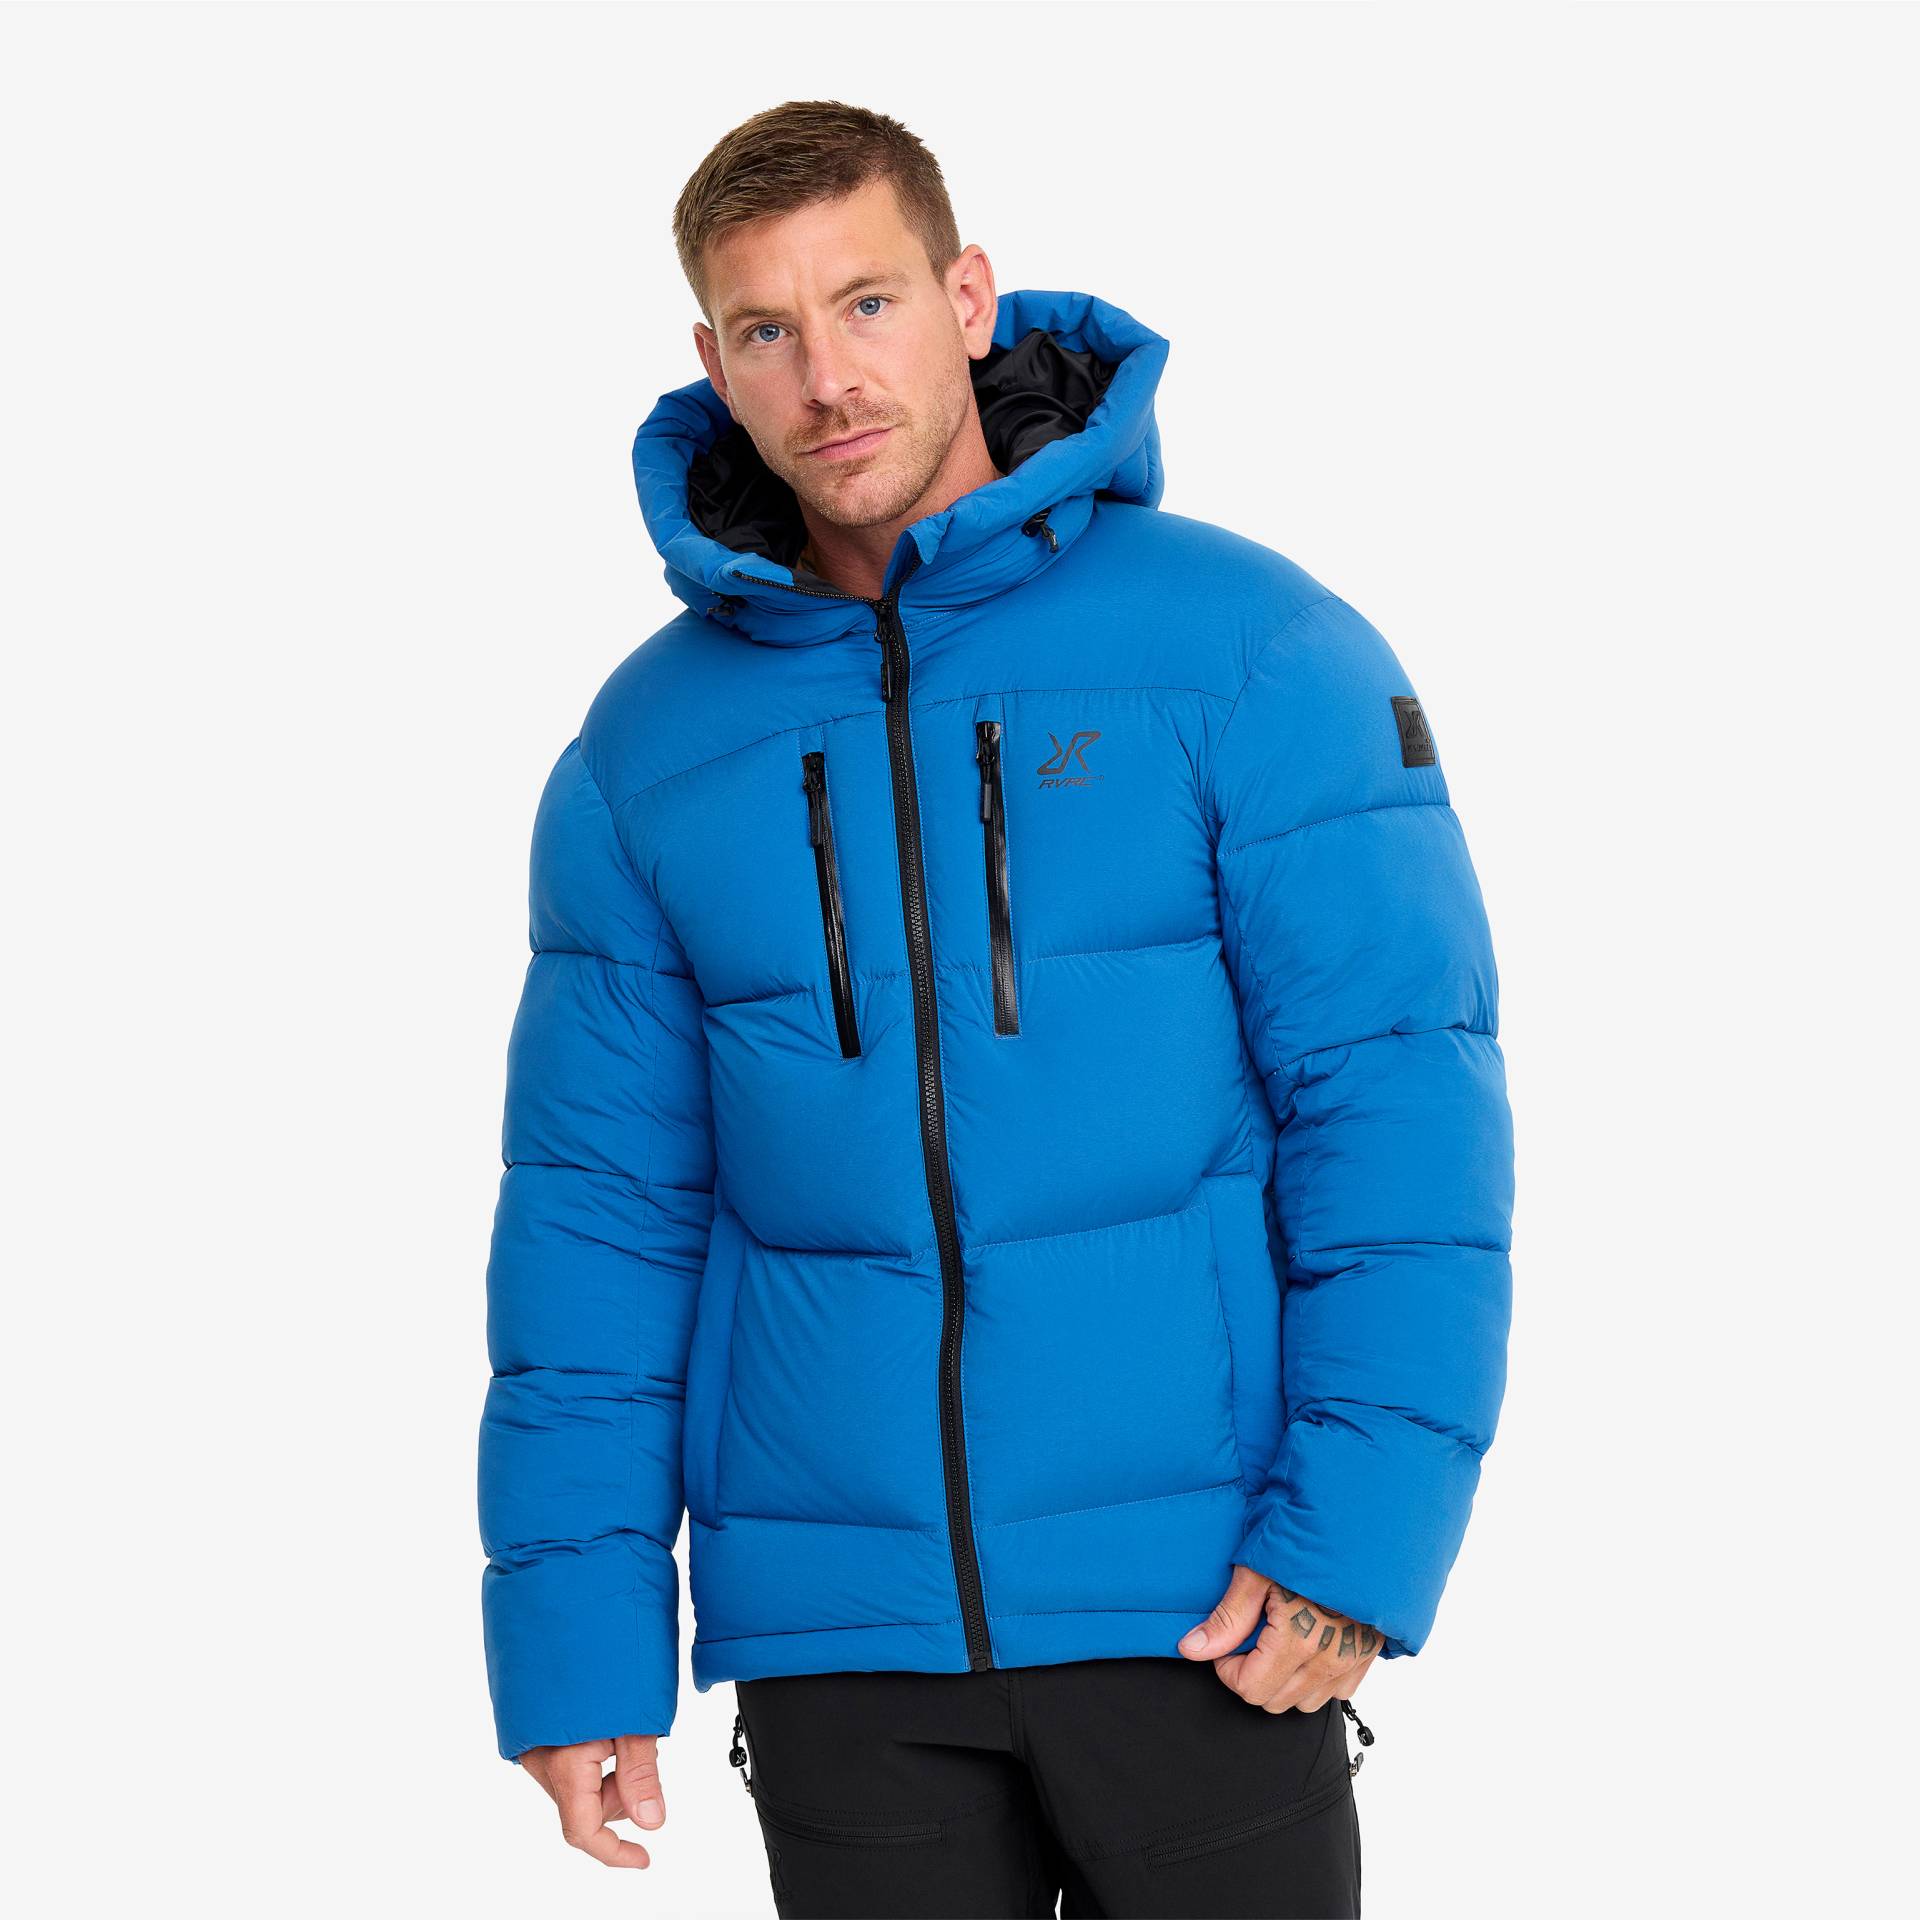 Flexpedition Down Jacket Herren Classic Blue, Größe:S - Winterjacken von RevolutionRace